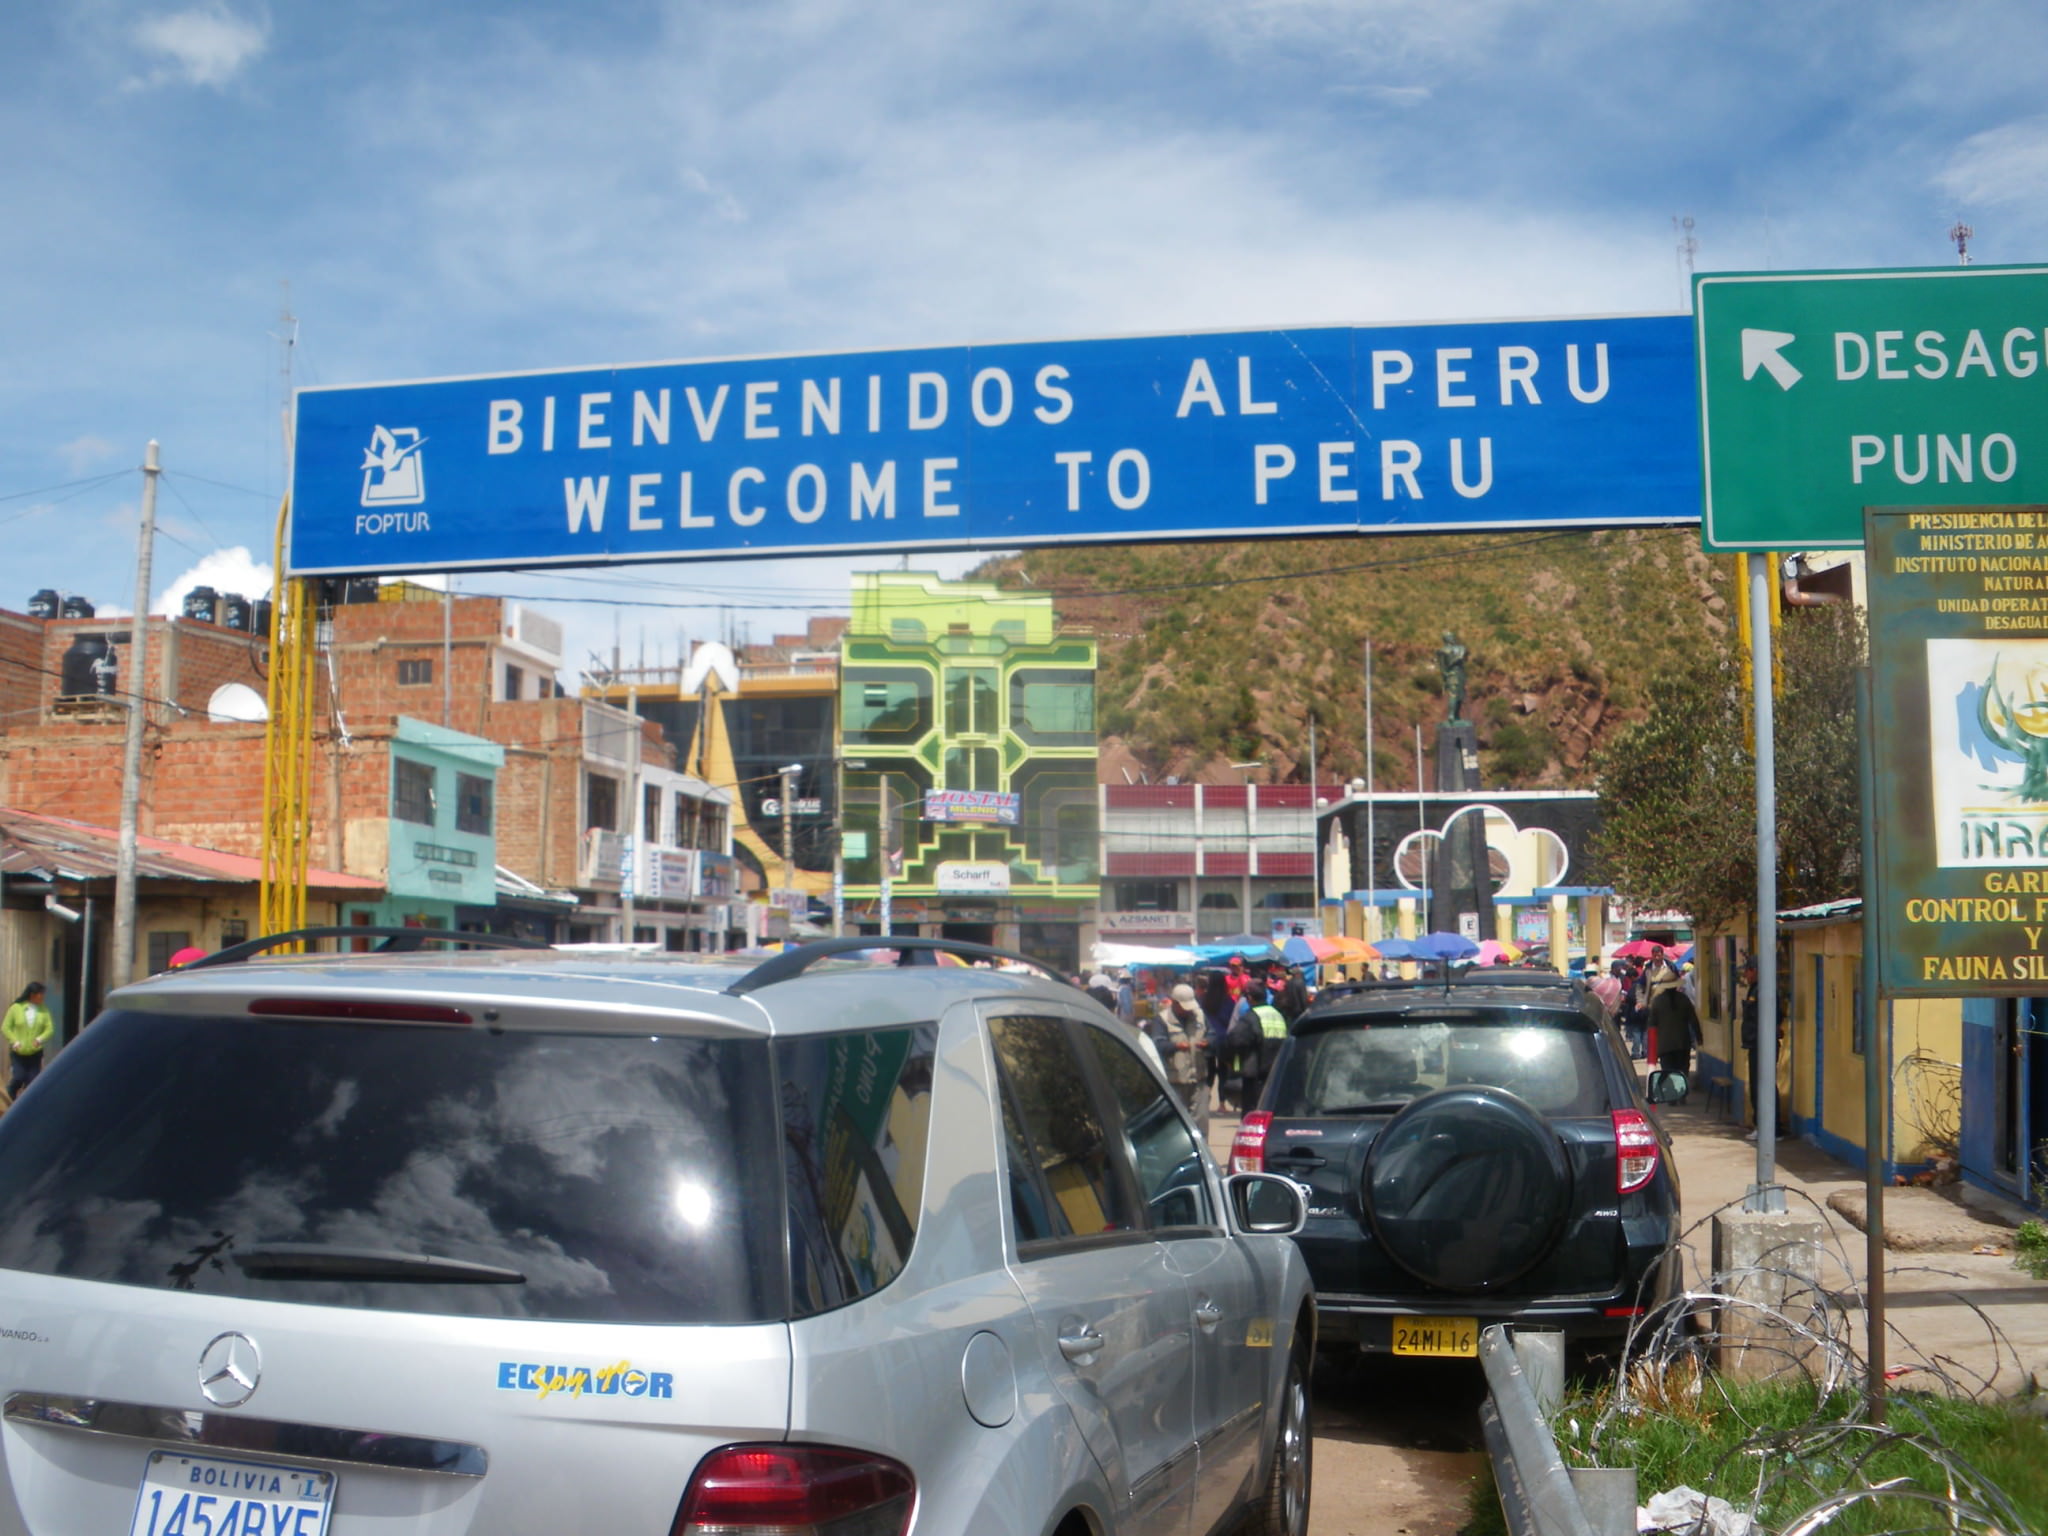 Desaguadero Bolivia Peru border control Don't Stop Living